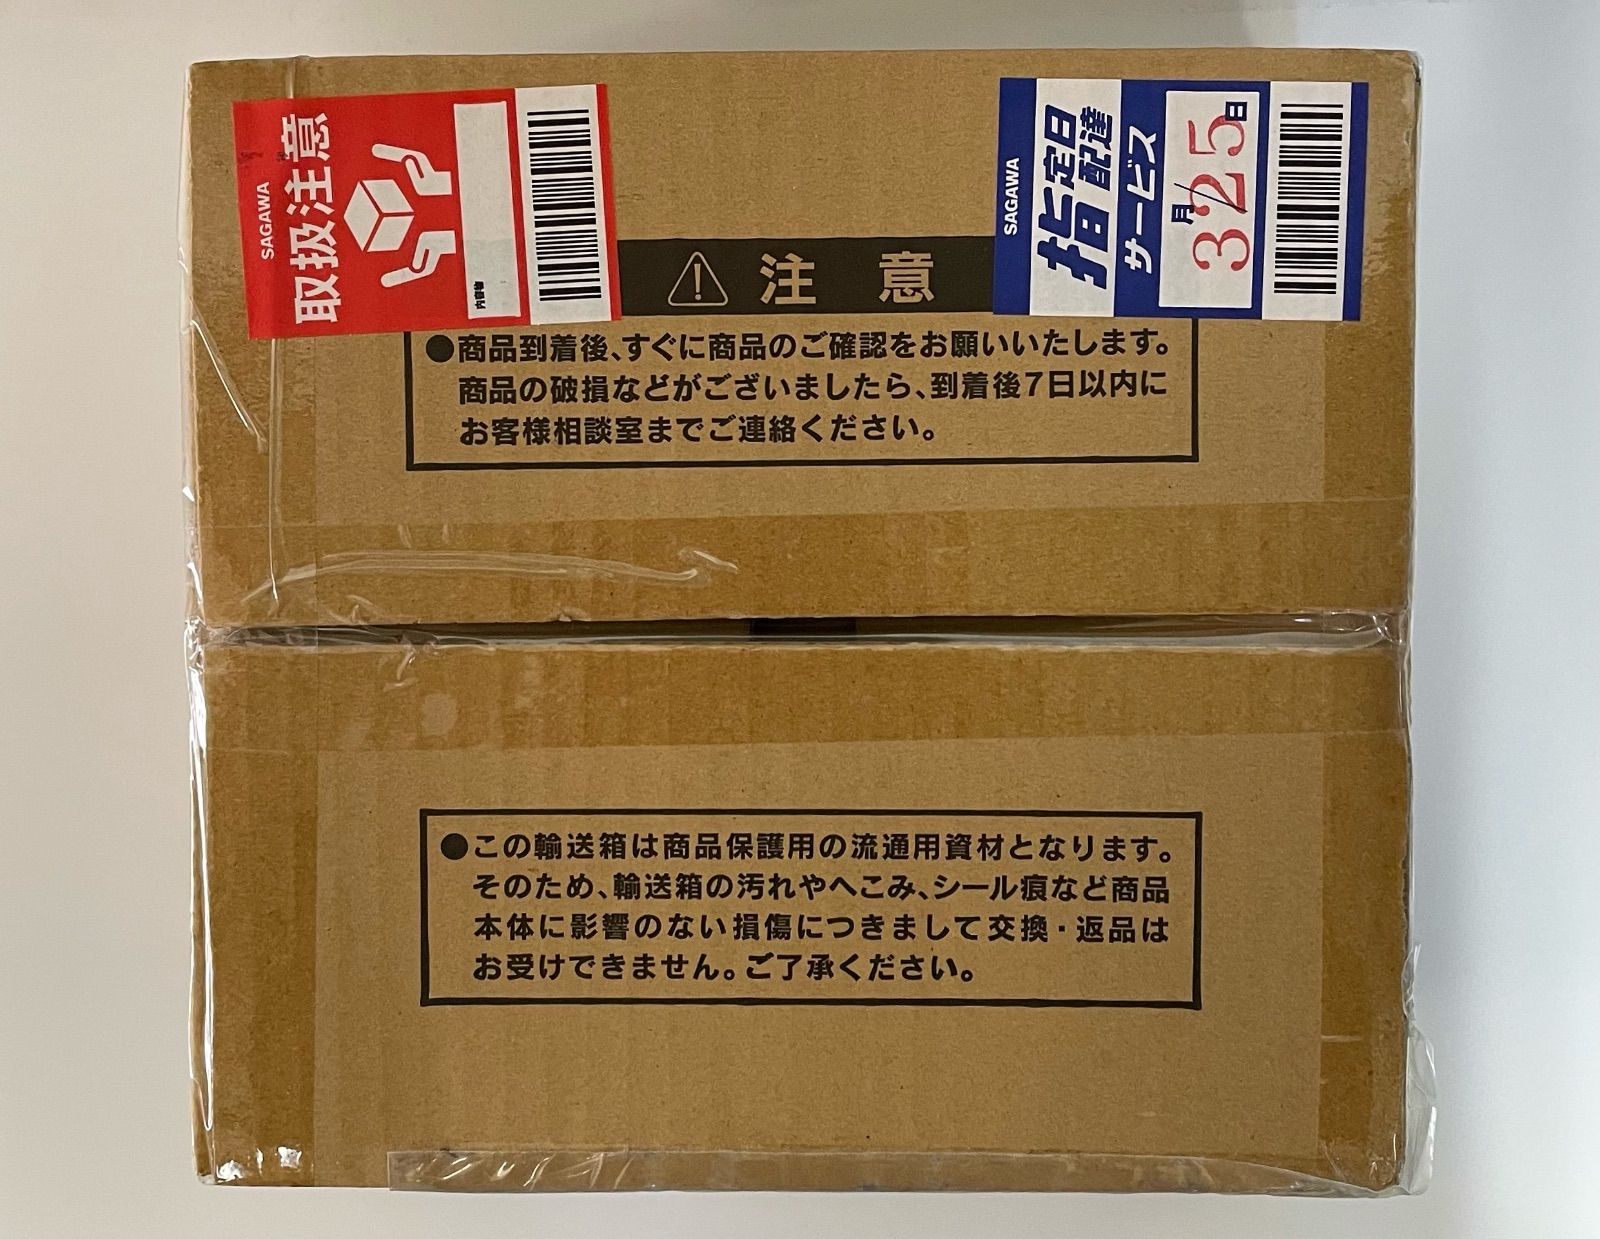 遊戯王OCGデュエルモンスターズブラック・マジシャンスペシャルカードステンレス製サイズ約H86mm×W59mm